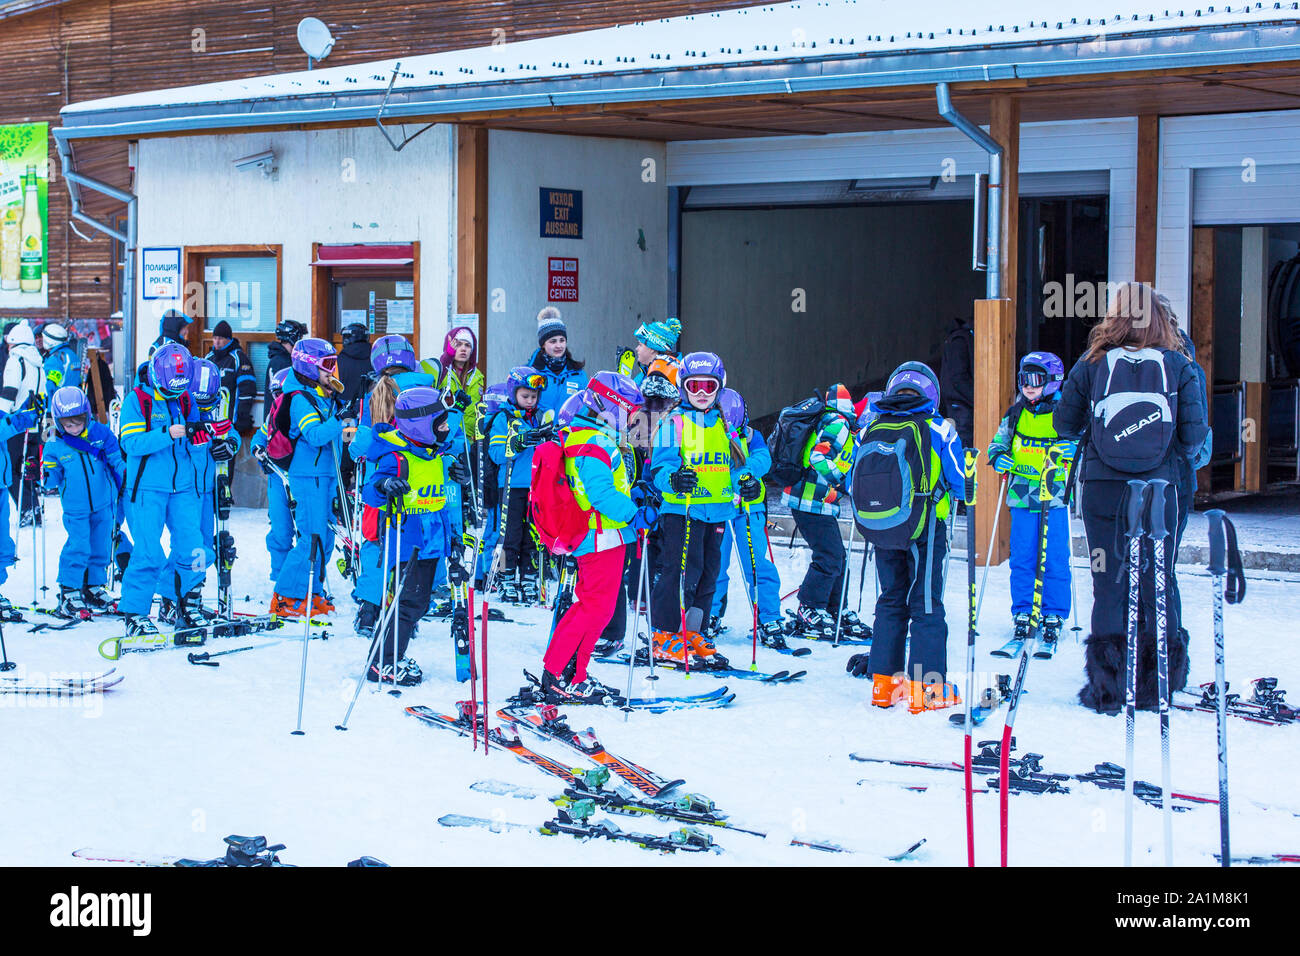 Bansko, Bulgaria - December, 12, 2015: Many young skiers preparing to ski in Bansko, Bulgaria Stock Photo